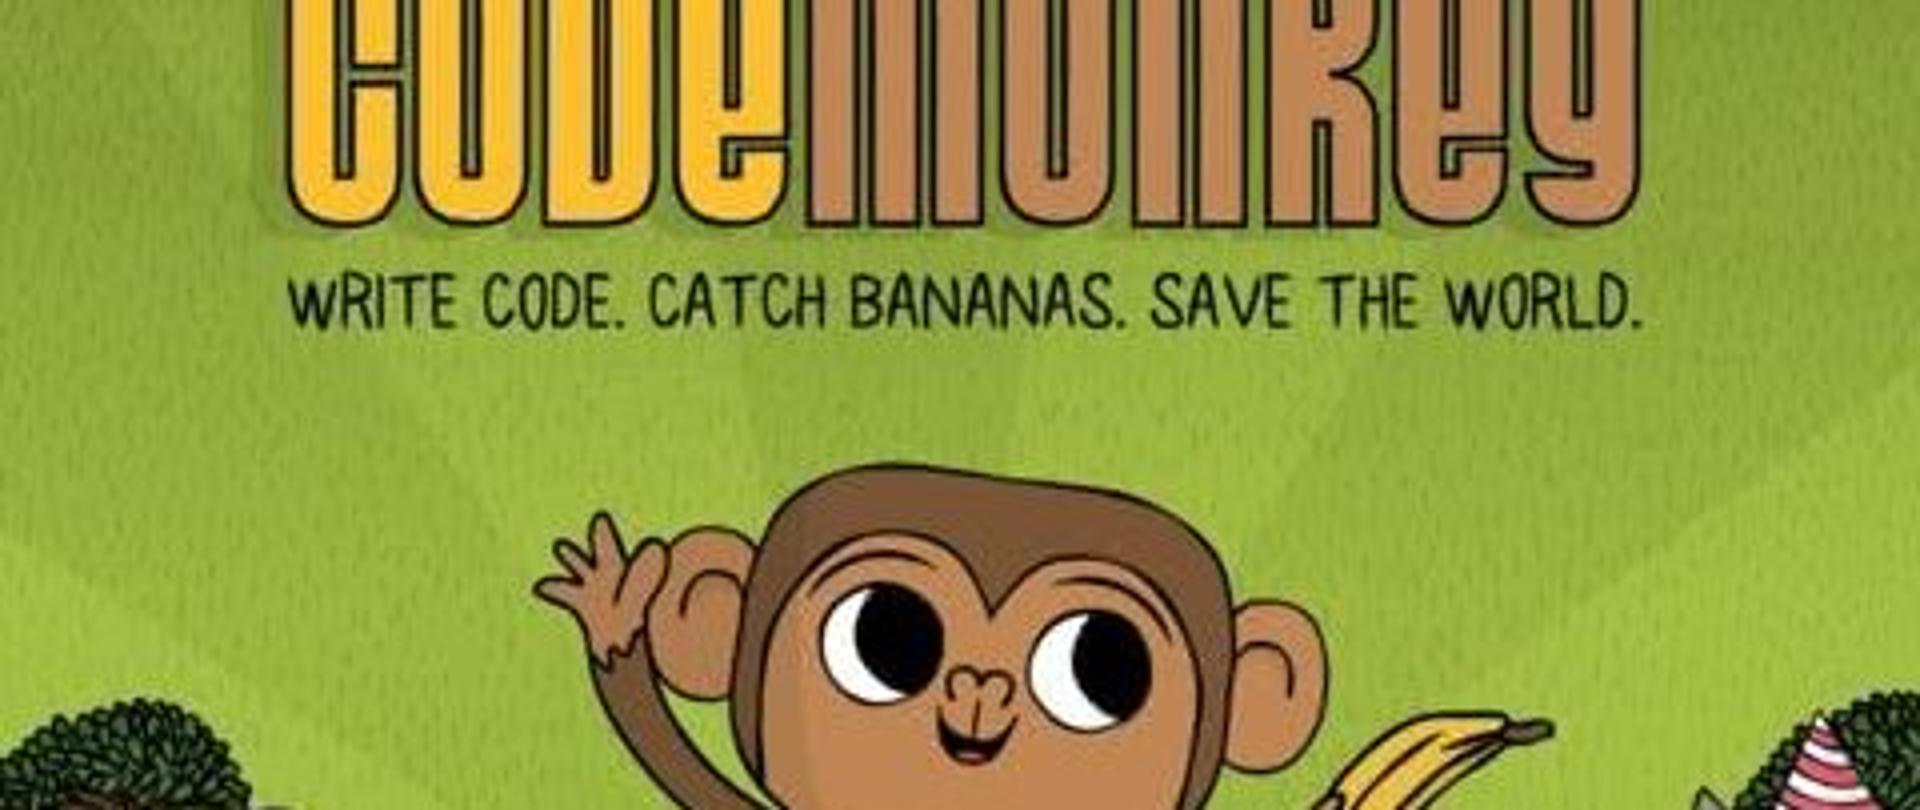 Na zdjęciu widzimy rozbawioną małpkę z bananem w łapce.